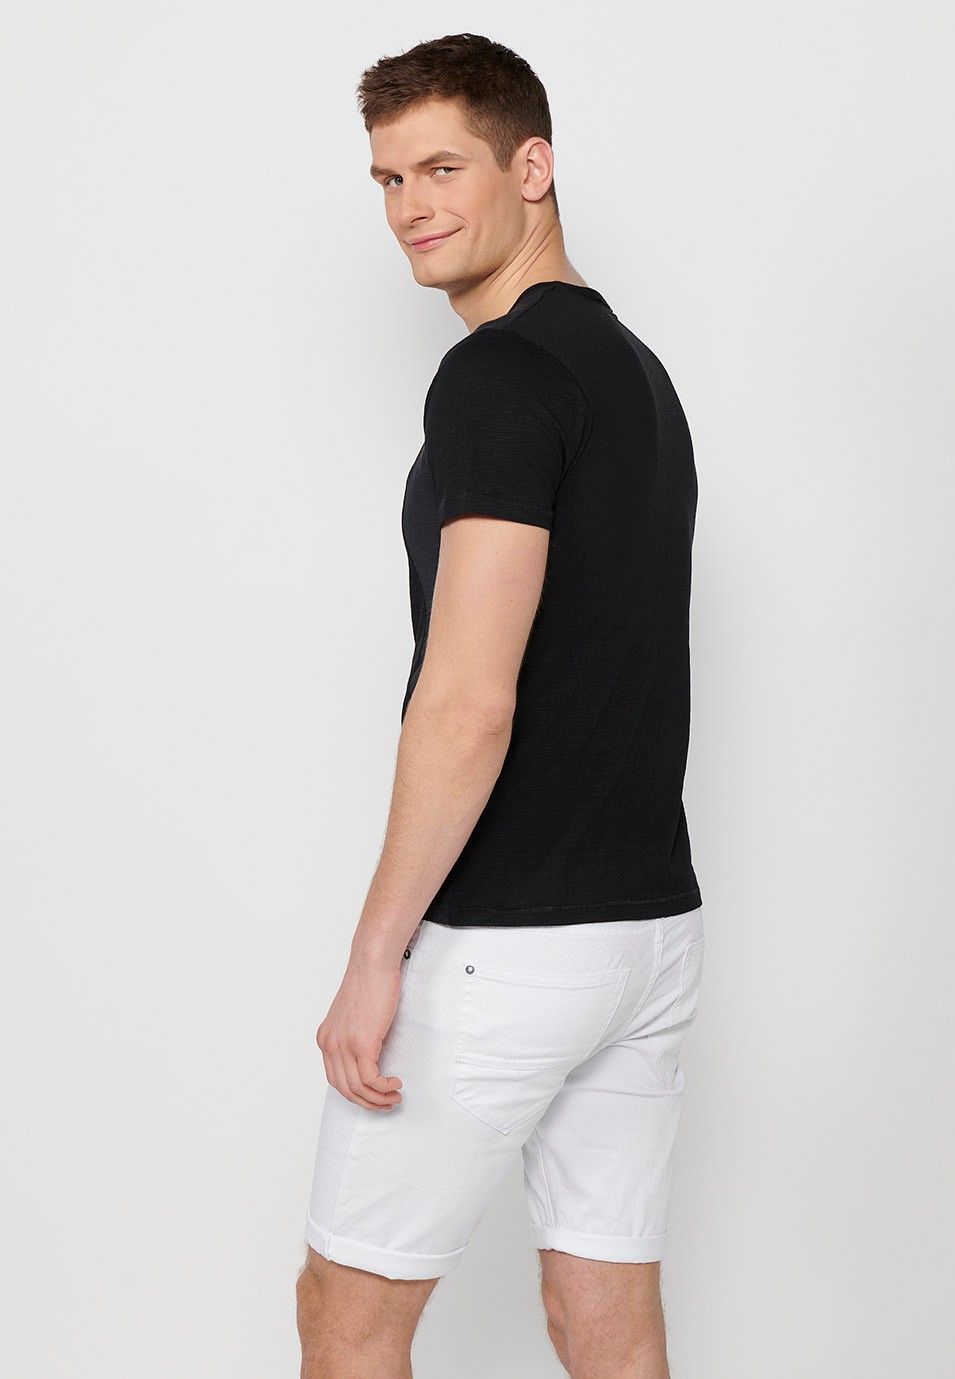 T-shirt homme noir à manches courtes en coton, col rond avec ouverture boutonnée